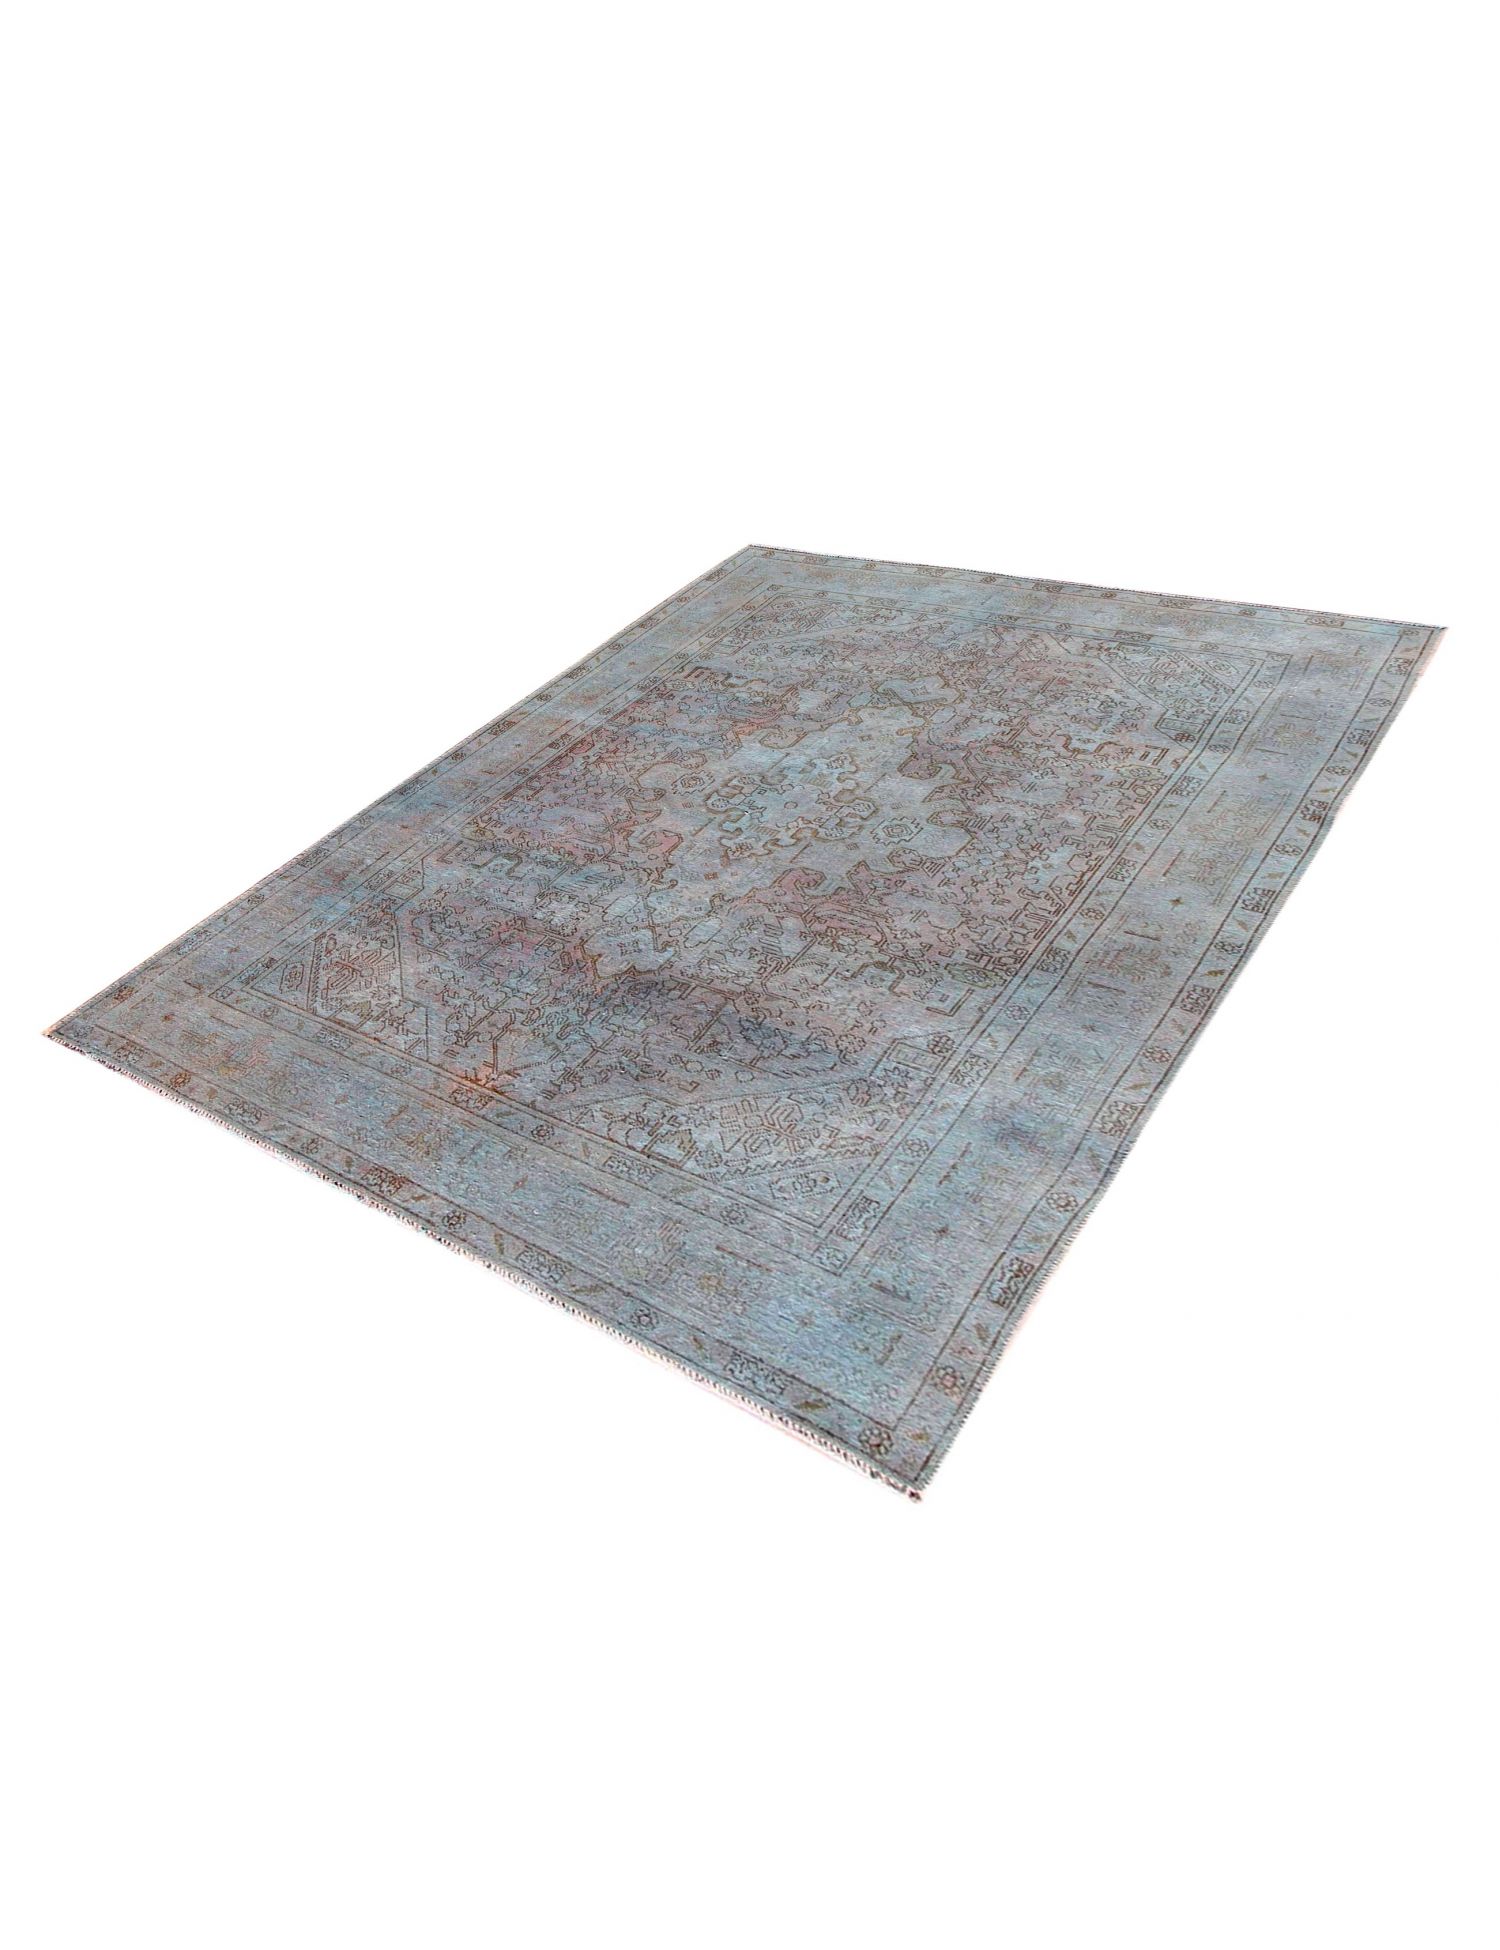 Persischer Vintage Teppich  türkis <br/>290 x 200 cm